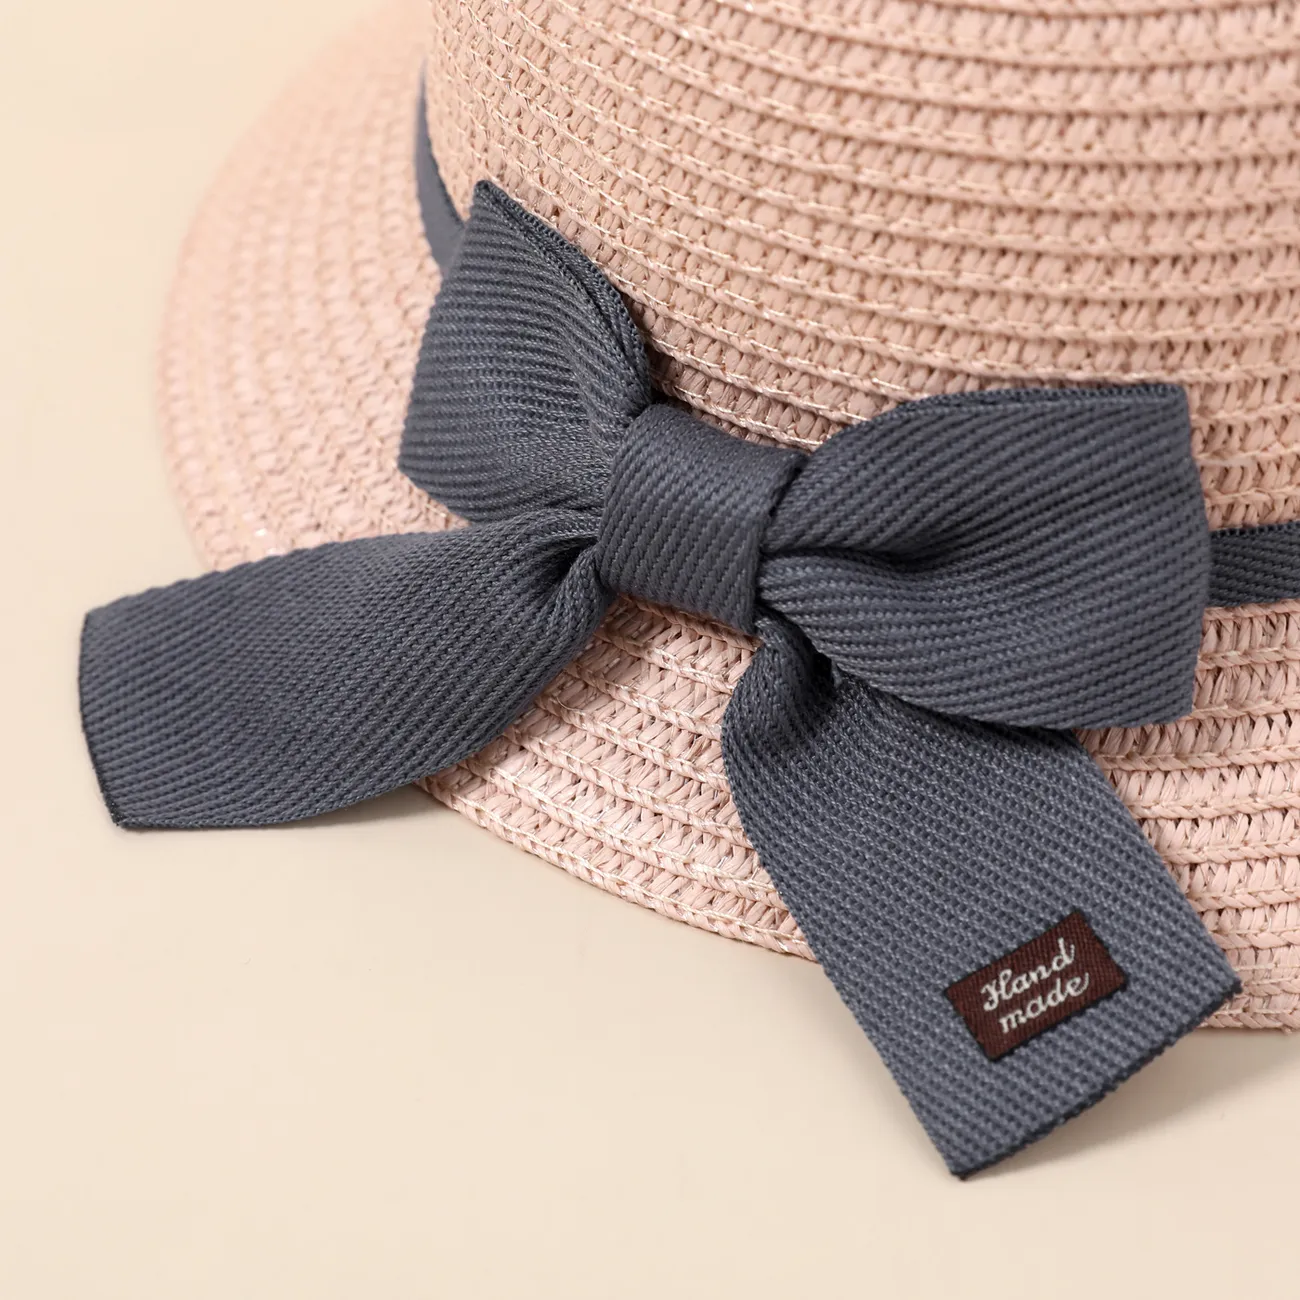 Conjunto de sombrero de cubo de paja con lazo con cordones para niños pequeños / niños y bolso de paja para niñas Rosa claro big image 1